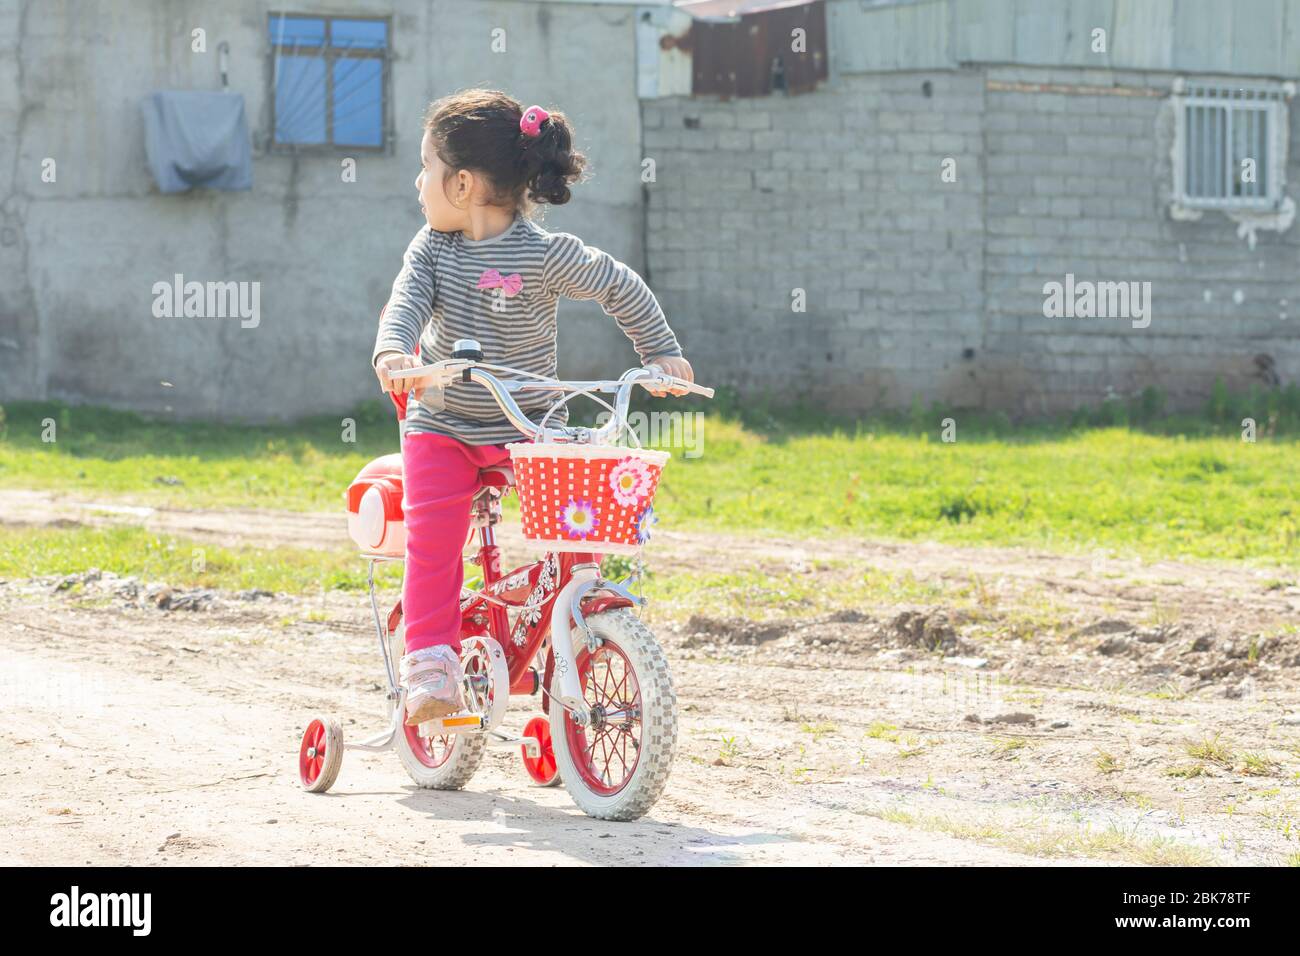 Kleines Mädchen, das auf einem roten Vierrad in einer unbefestigten Straße fährt und hinter sich schaut, mit dem Fahrrad entkommt Stockfoto